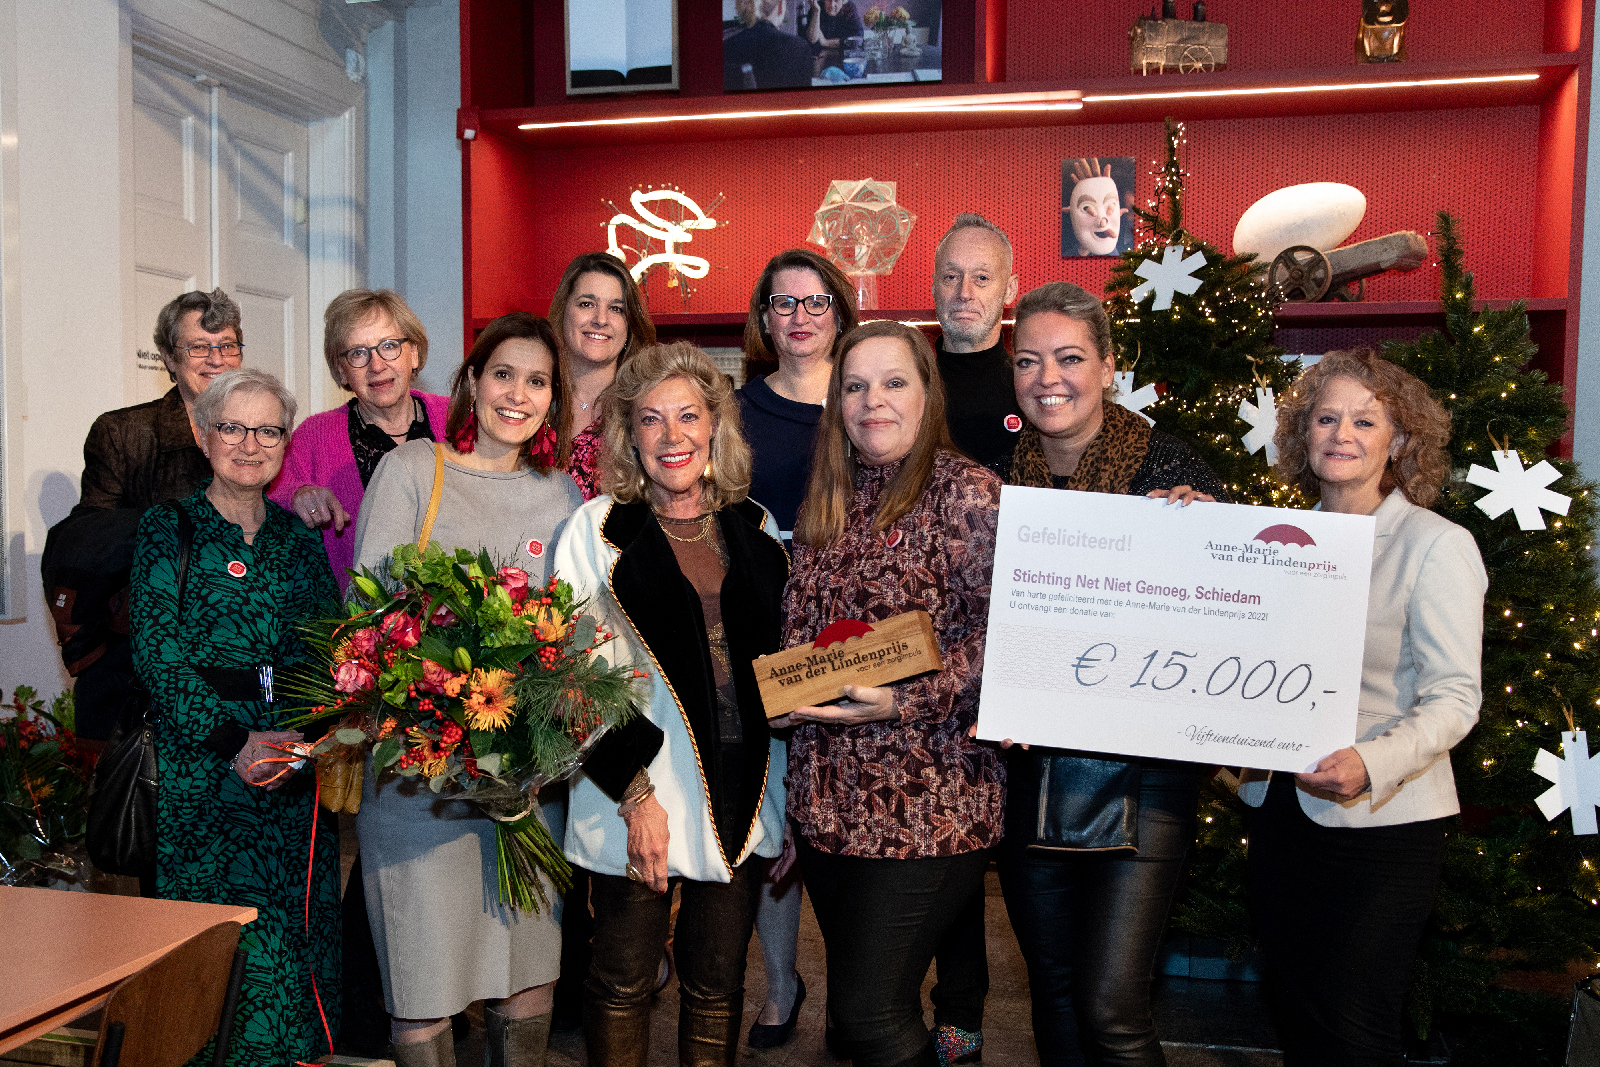 Stichting Net Niet Genoeg is de winnaar van de Anne-Marie van der Lindenprijs 2022